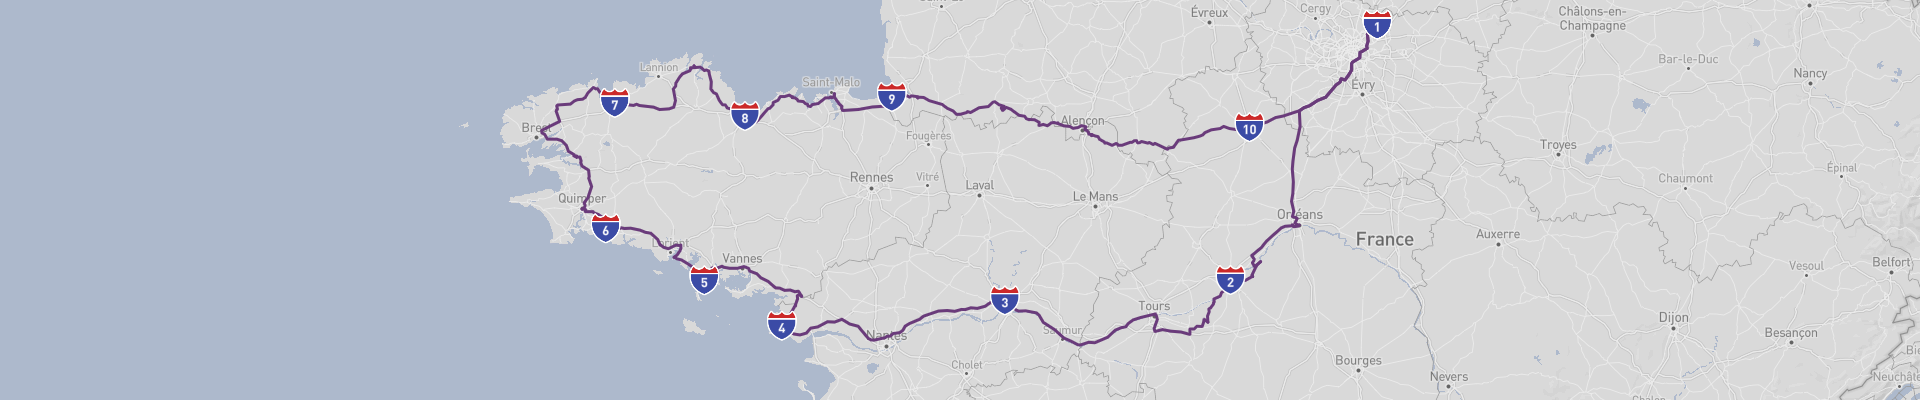 Itinéraire le long de la Loire vers la Bretagne 